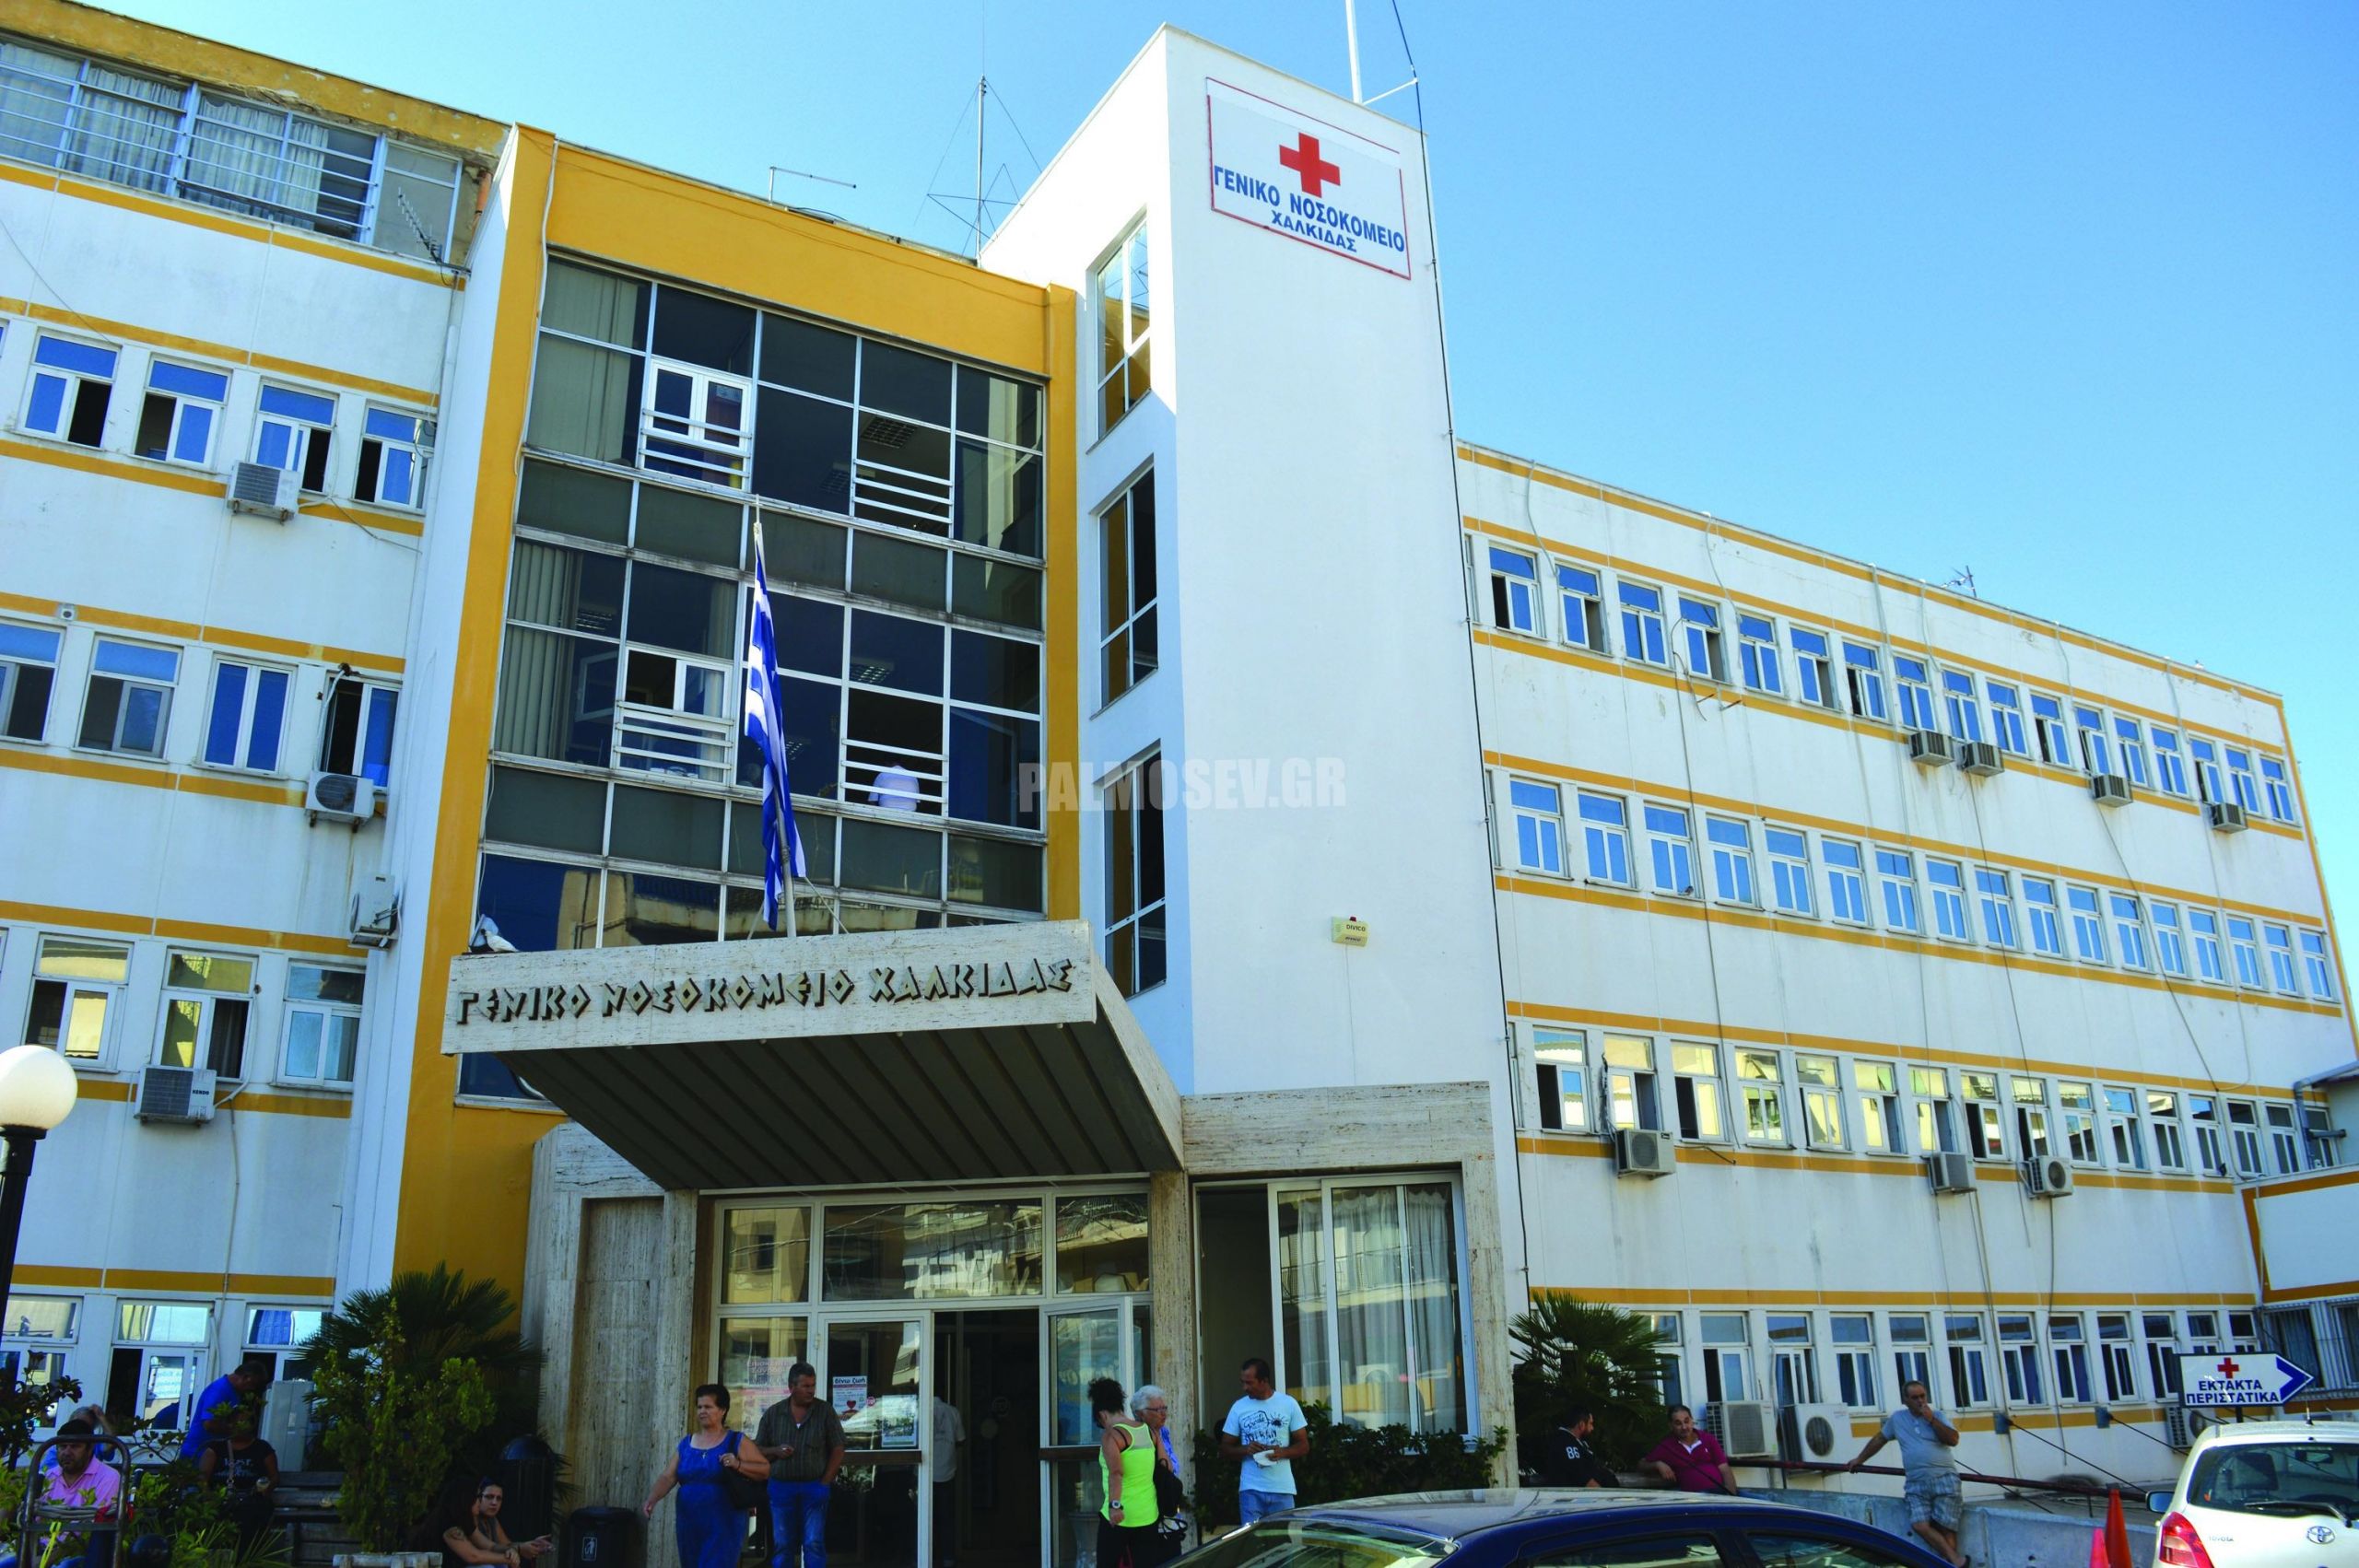 ΣΥΡΙΖΑ για συμβασιούχους Νοσοκομείου Χαλκίδας: Να παραμείνουν στη θέση τους όλοι οι εργαζόμενοι